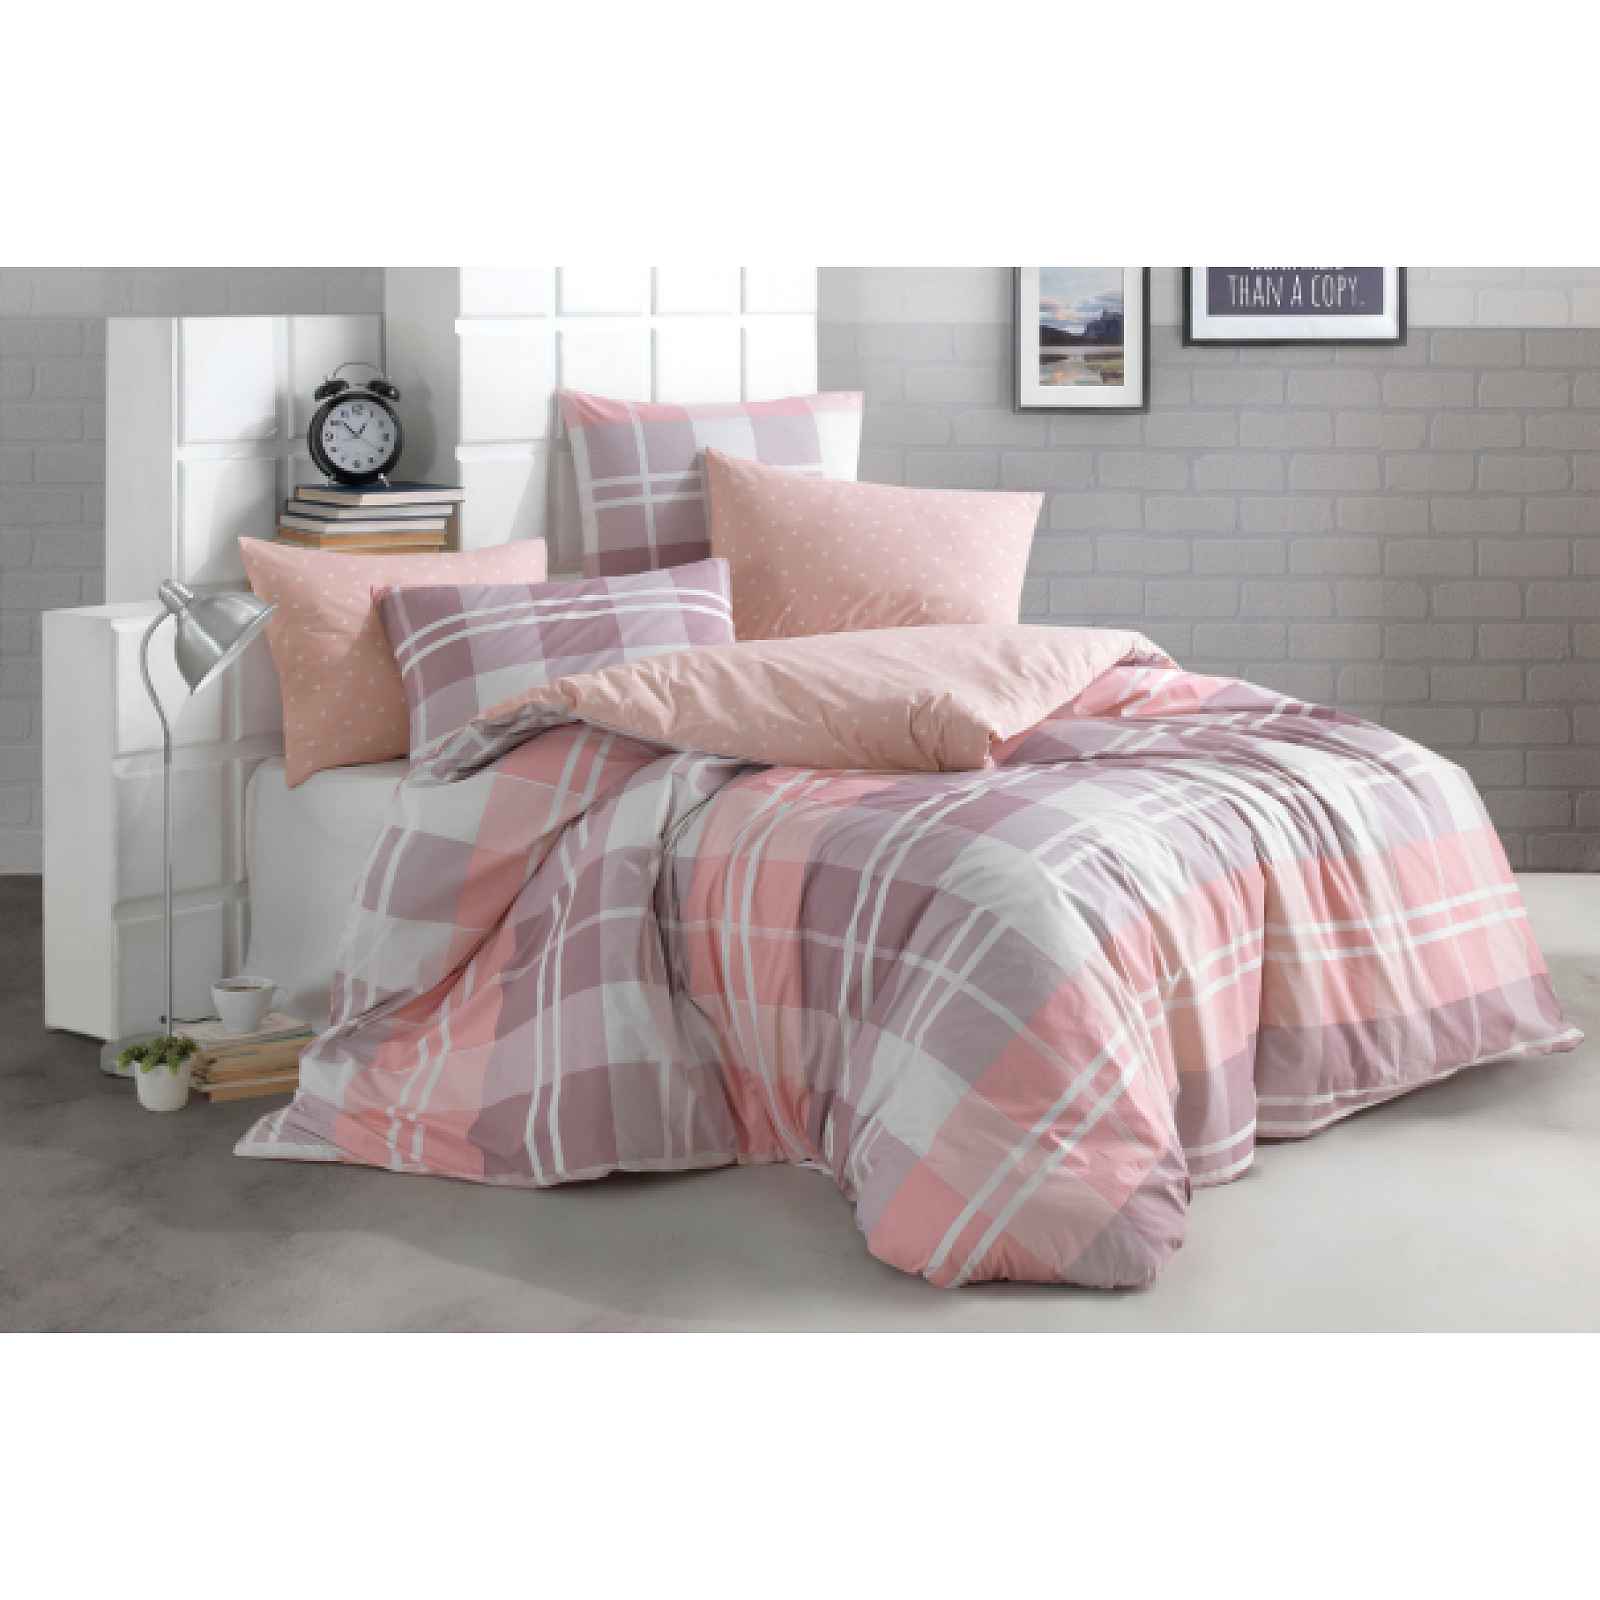 Klinmam Home Mark V2 Pink povlečení z Renforcé bavlny, oboustranné povlečení, barva růžová, 140x200 cm + 70x90 cm